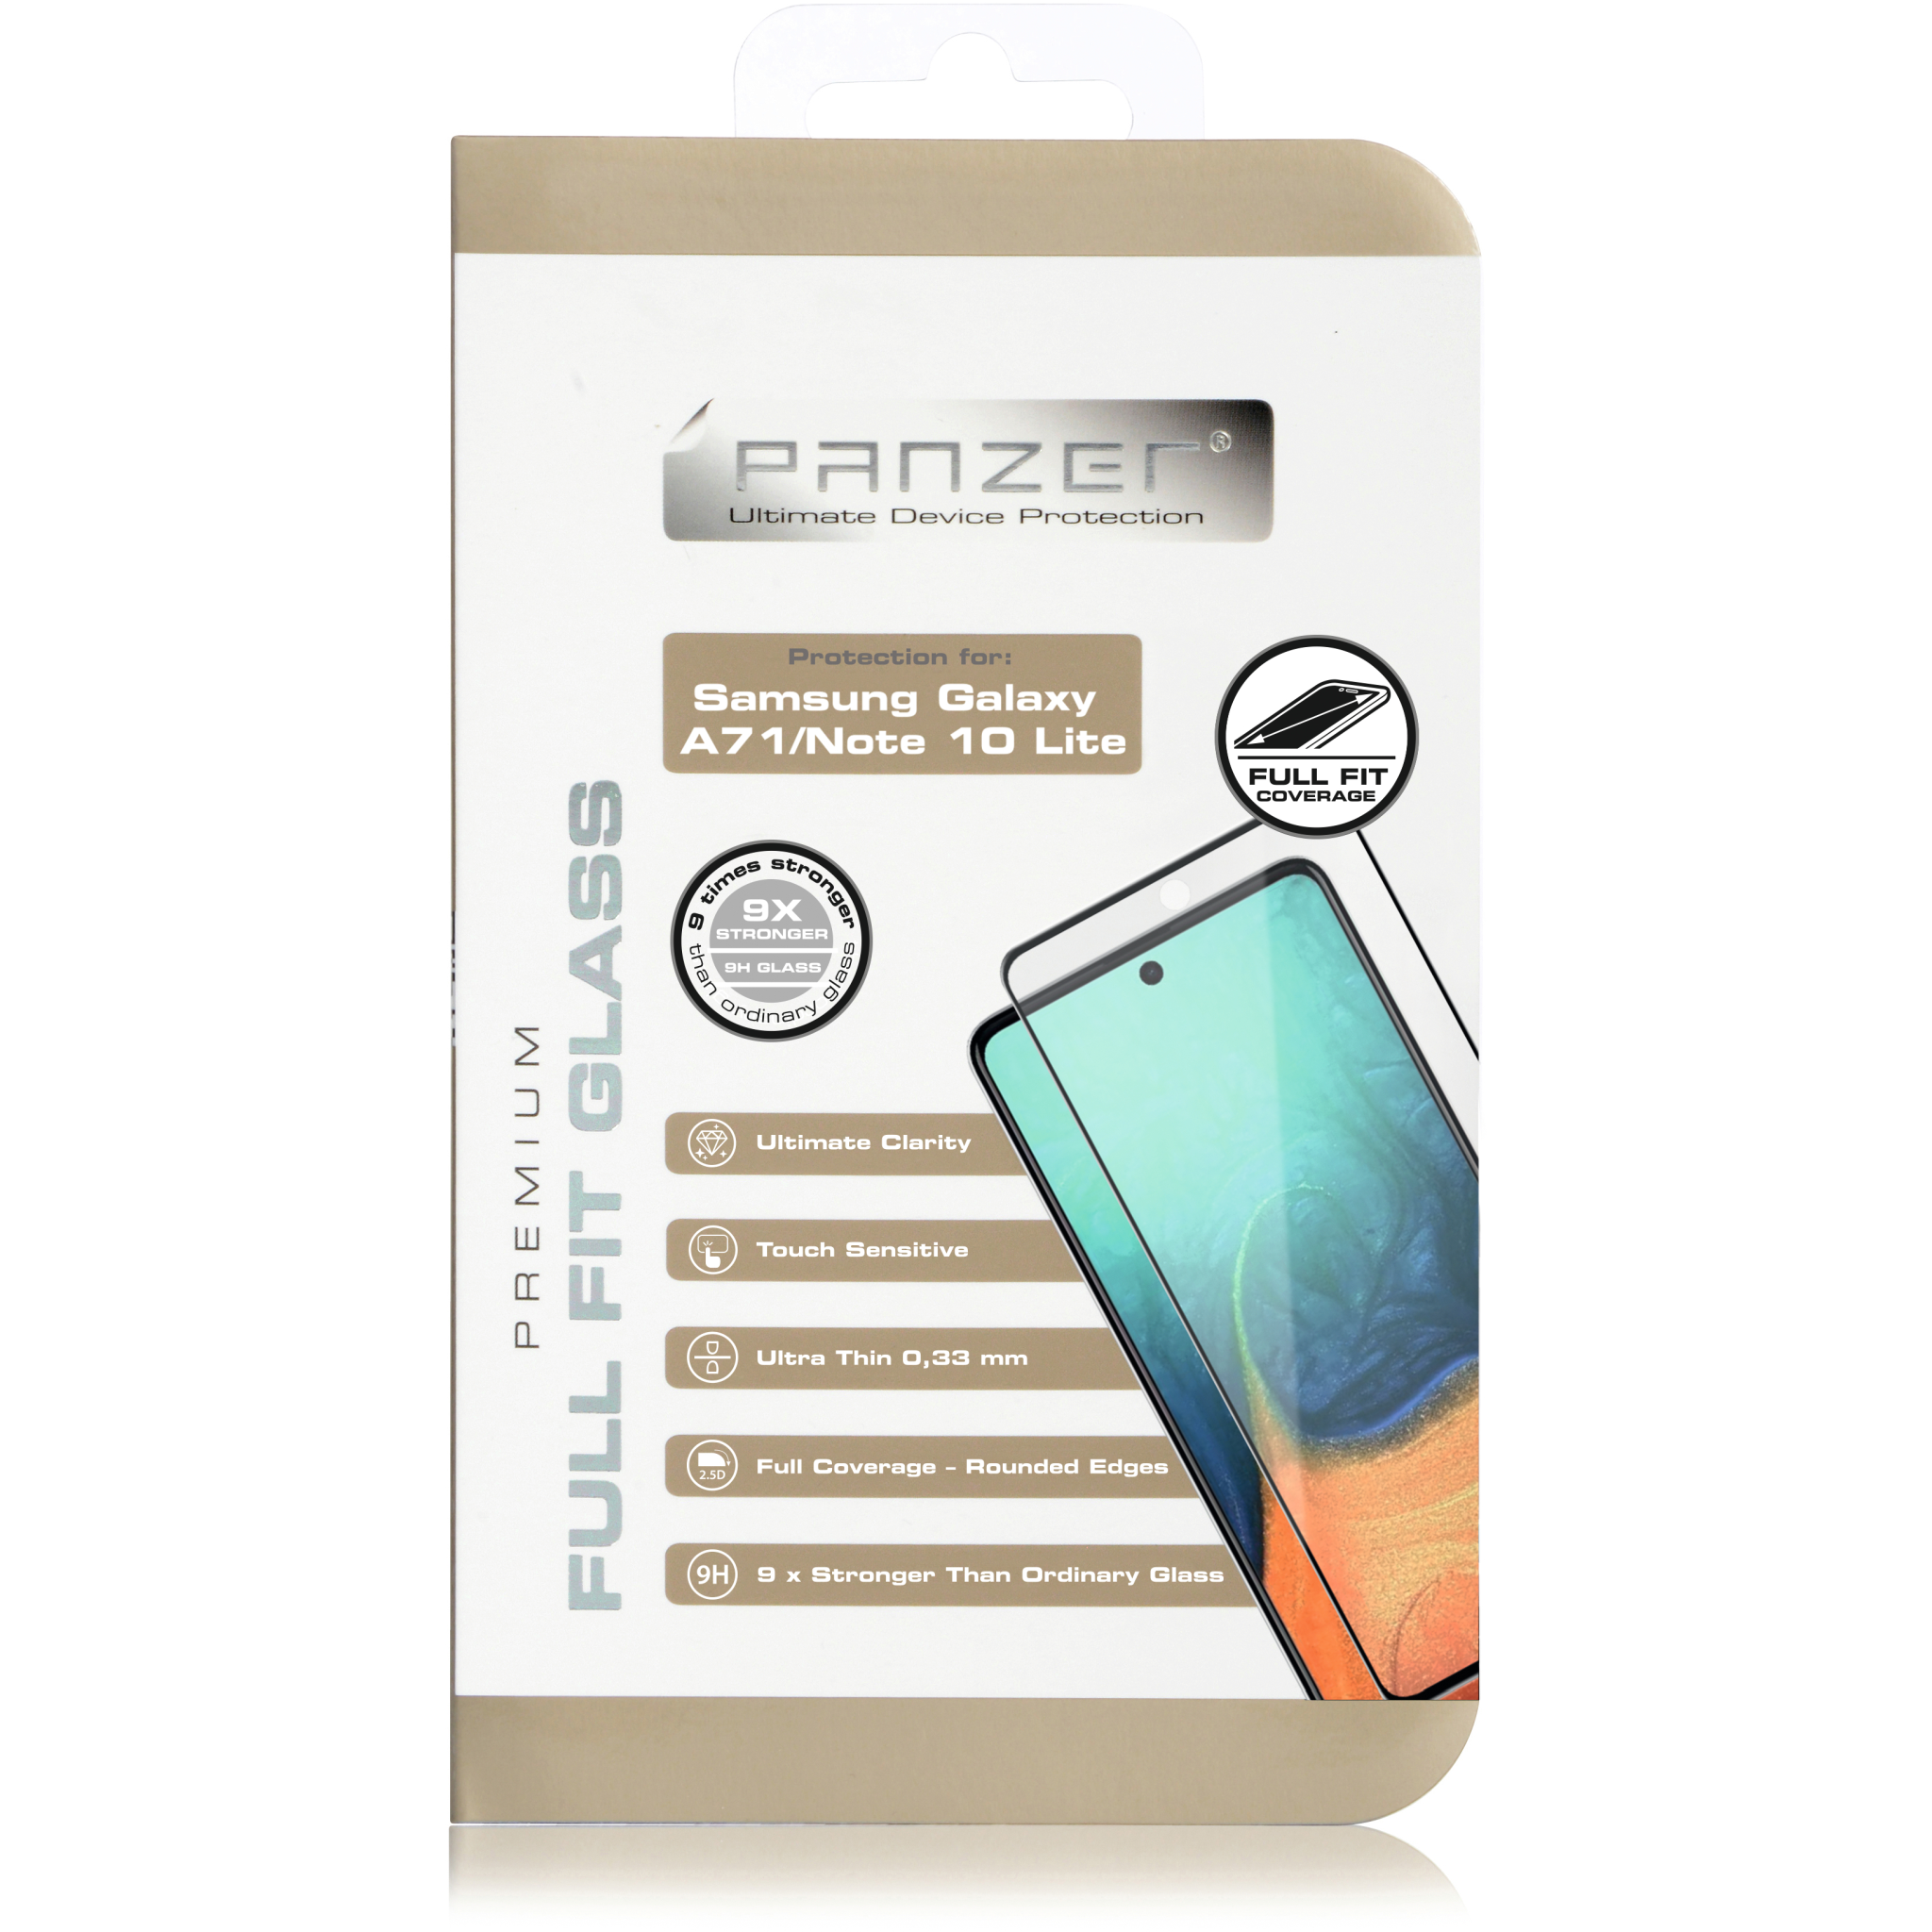 5706470117822 Panzer Samsung Galaxy Note 10 Lite/A71, Full-Fit Glass, Blac Telefon & GPS,Tilbehør mobiltelefoner,Skærmbeskyttelse til mobiltelefoner 74600009650 0